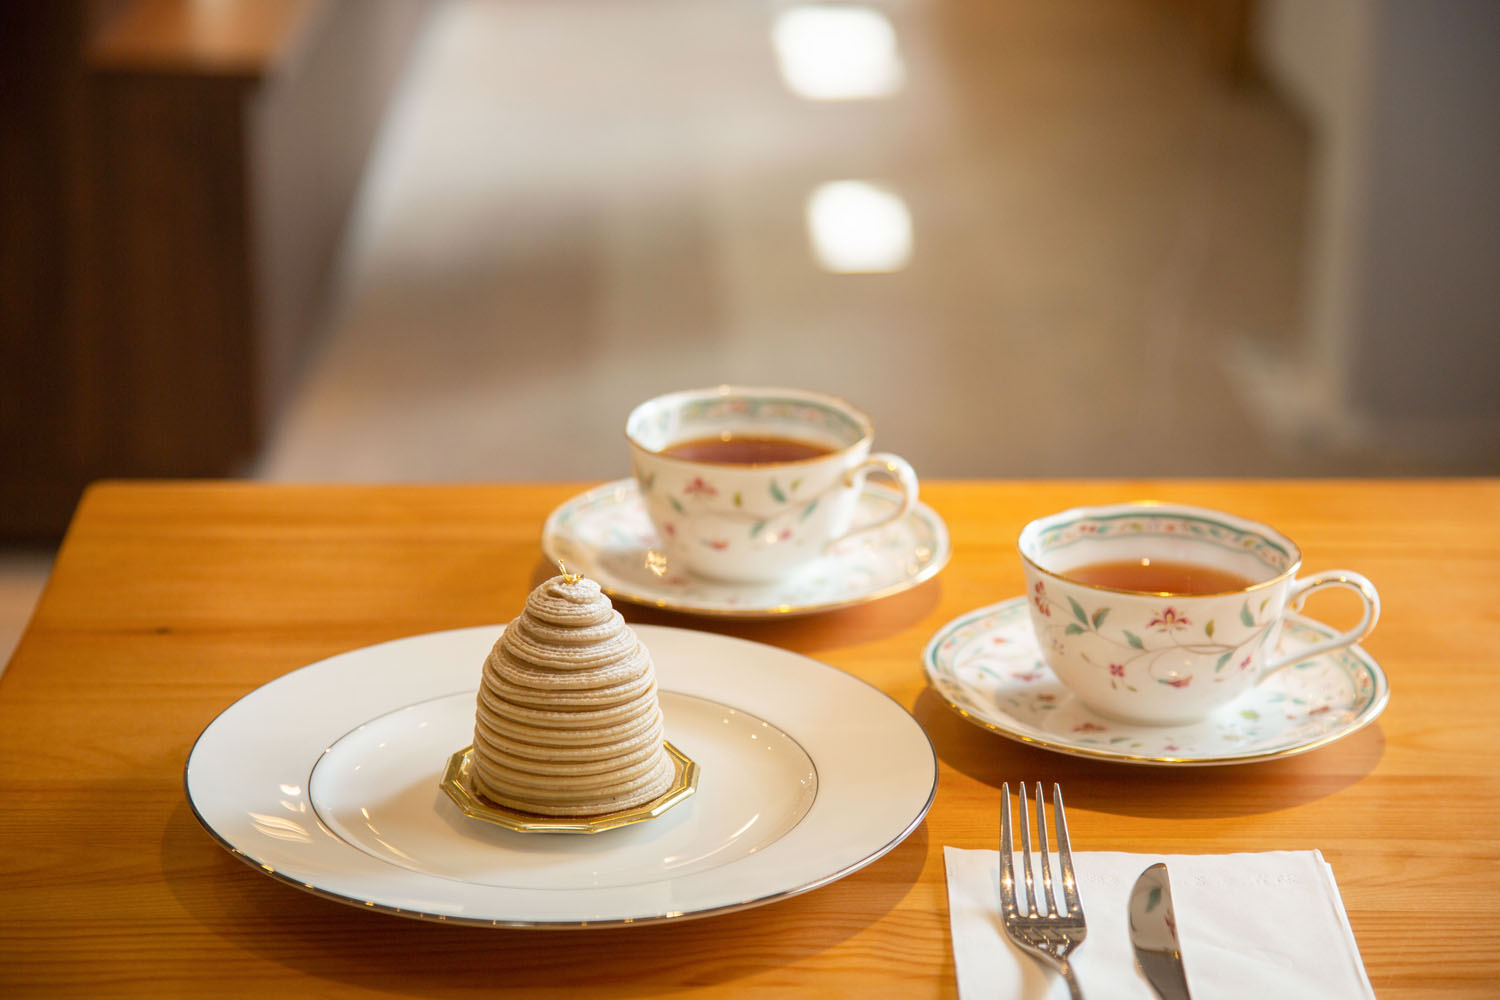 お茶2杯とケーキで1230円〜。茶は2種選べ、ケーキとの相性で1杯目を、絶妙なタイミングで2杯目を淹れてくれる。